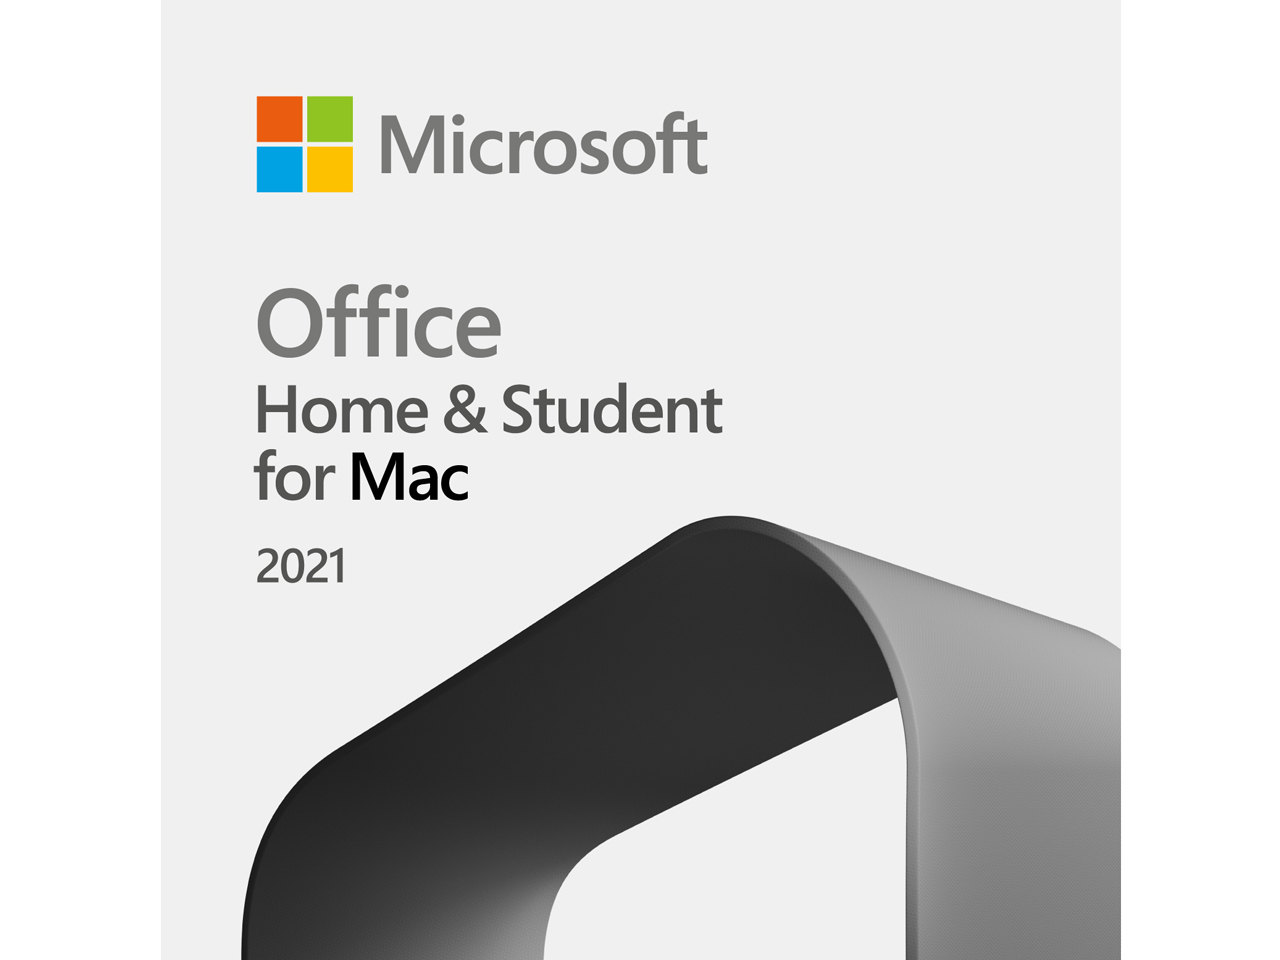 価格.com - Office Home & Student 2021 for Mac ダウンロード版 の製品画像